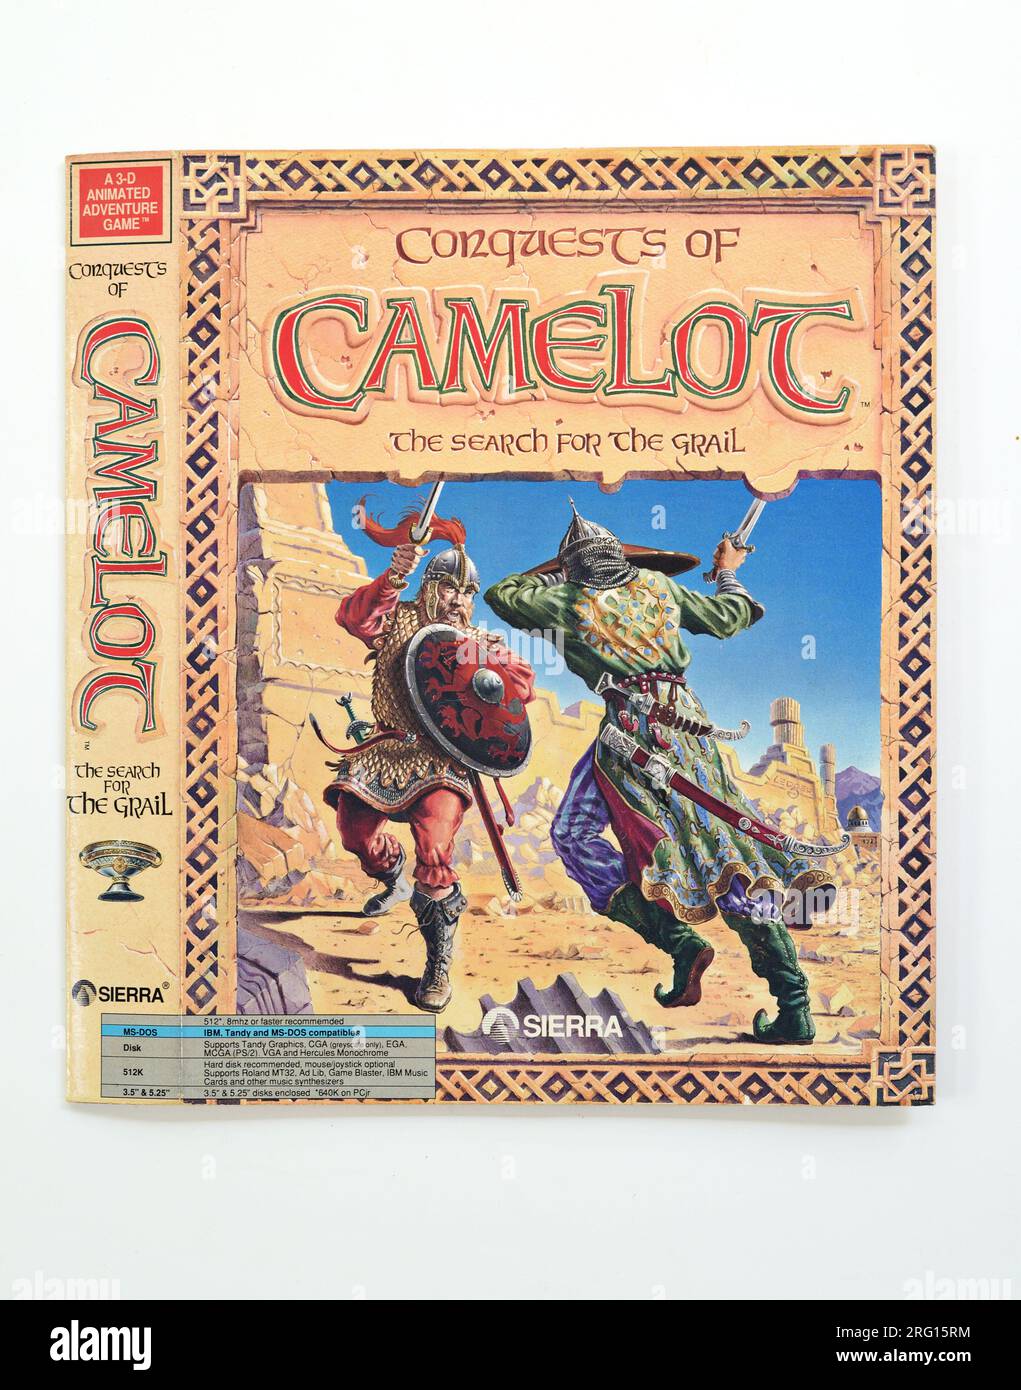 Conquests of Camelot: The Search for the Grail; parte anteriore della scatola del gioco, copertina illustrata Foto Stock